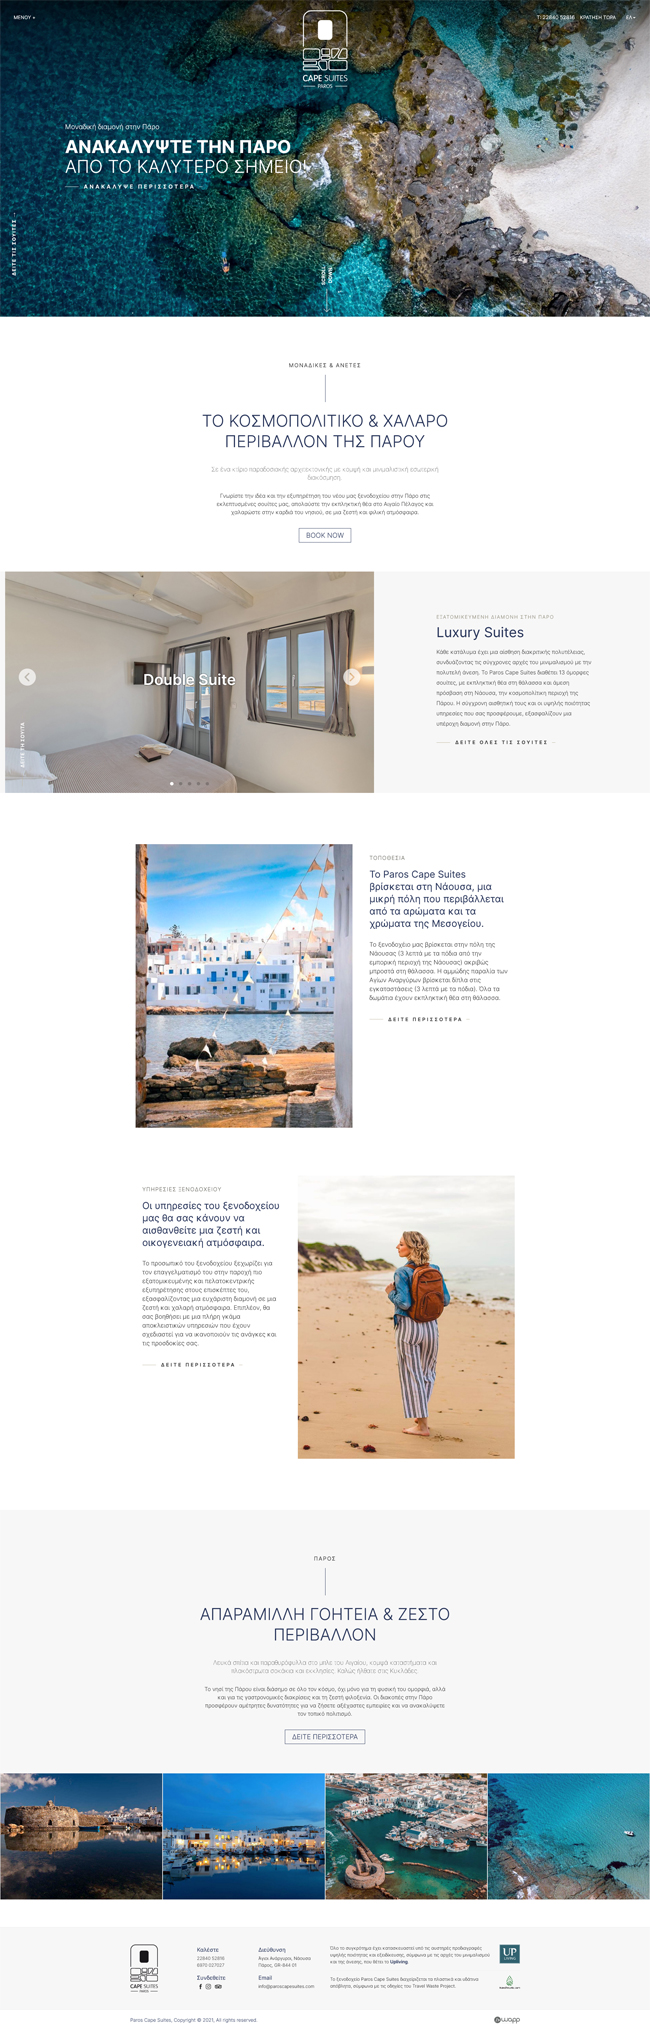 Κατασκευή responsive ιστοσελίδας για το ξενοδοχείο Paros Cape Suites